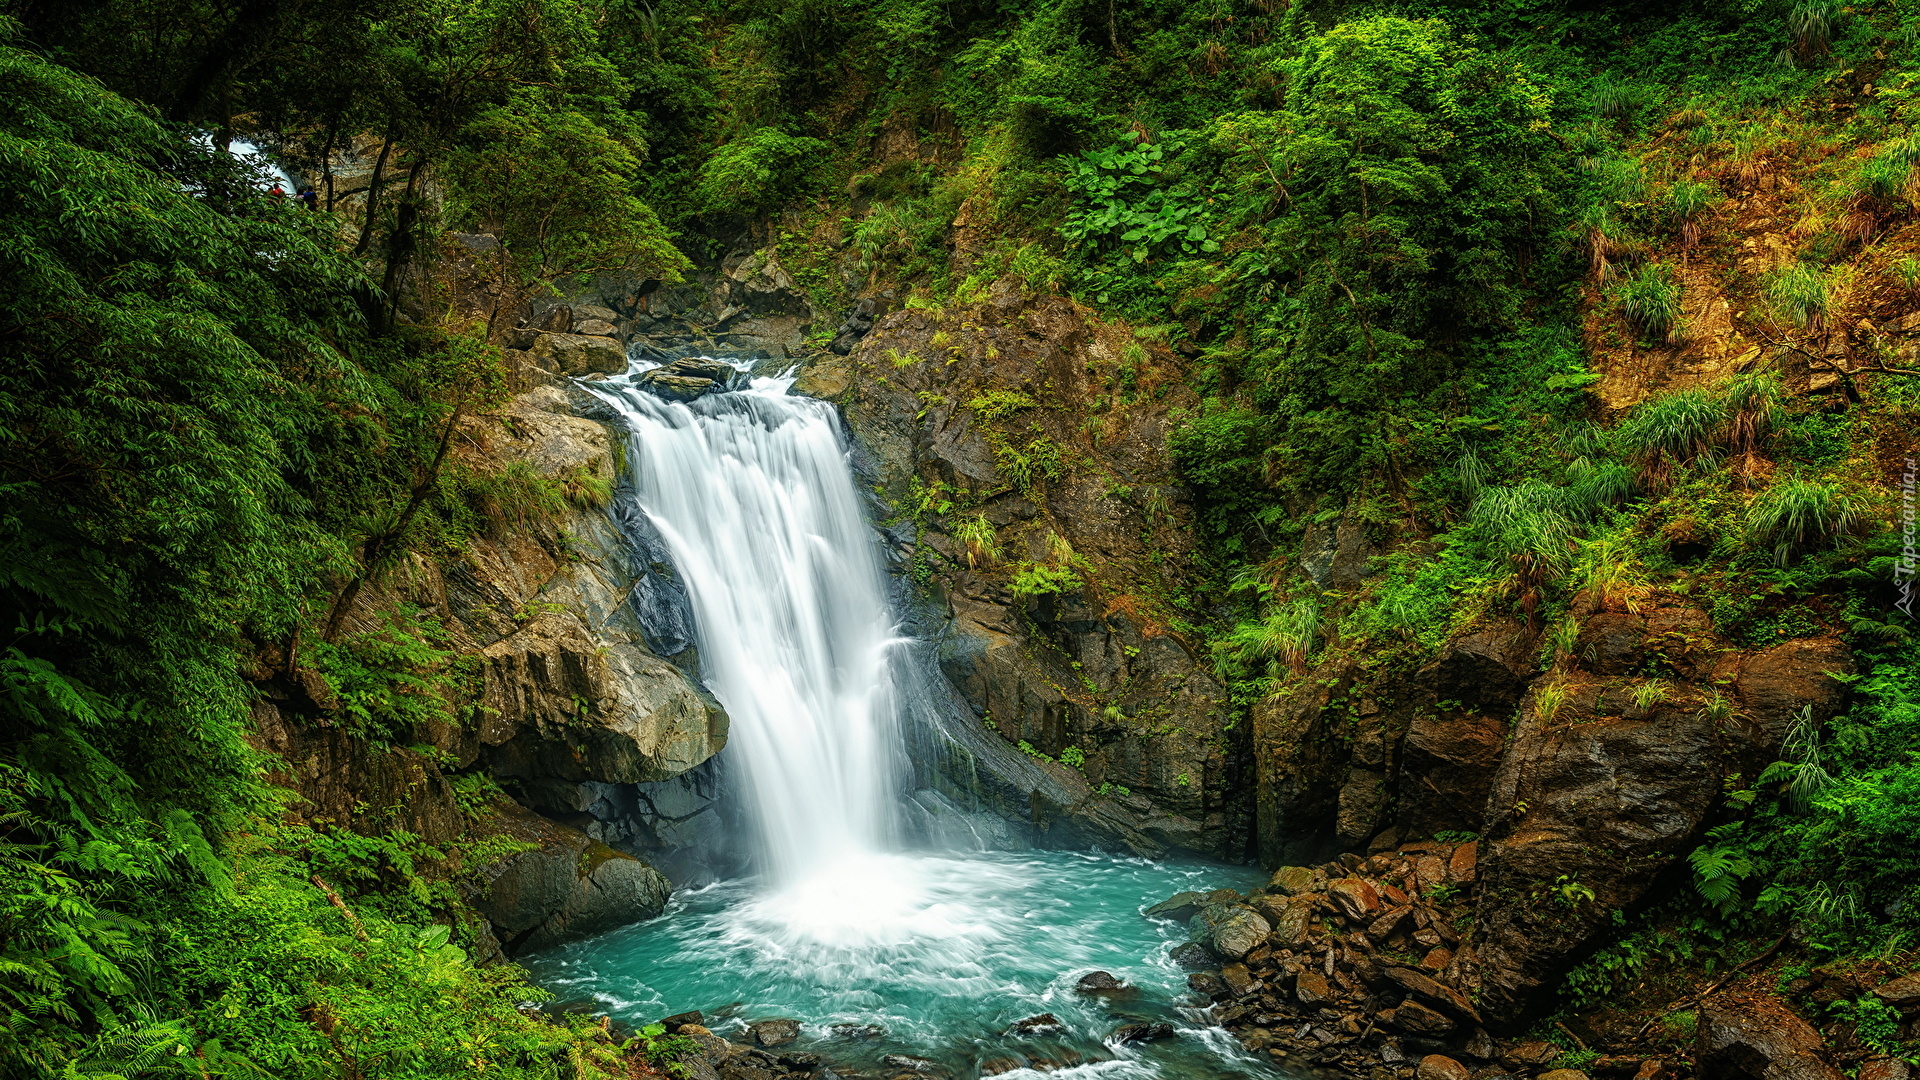 Wodospad Neidong Falls, Omszałe, Skały, Krzewy, Drzewa, Roślinność, Dzielnica Wulai, Nowe Tajpej, Tajwan